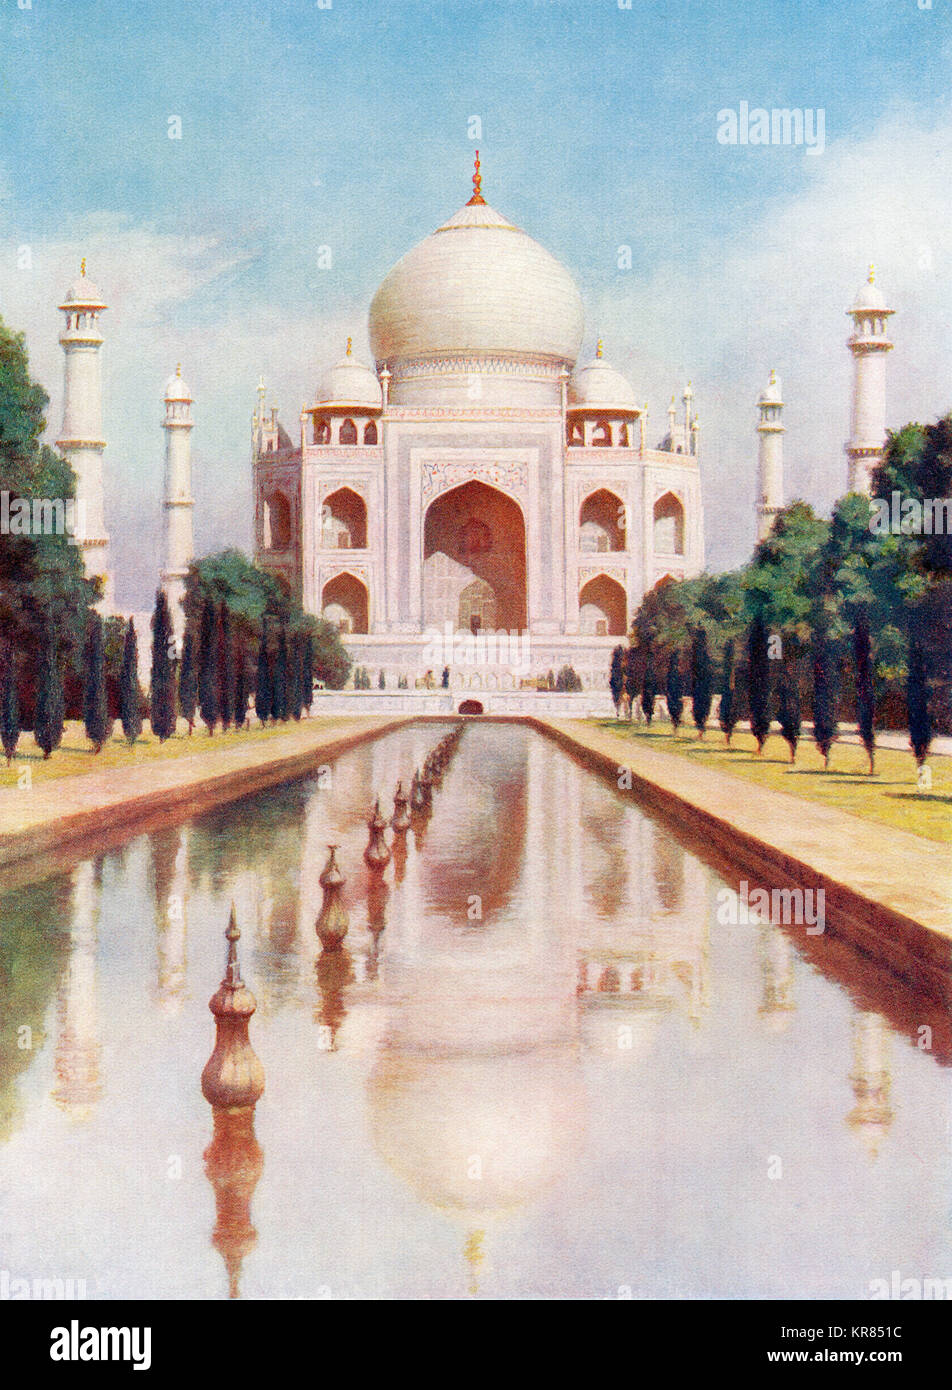 Il Taj-Mahal, Agra, Uttar Pradesh, India. Esso è stato commissionato nel 1632 dall'imperatore Mughal, Shah Jahan in casa la tomba di sua moglie prediletta, Mumtaz Mahal. Dalle meraviglie del mondo, pubblicato c.1920. Foto Stock